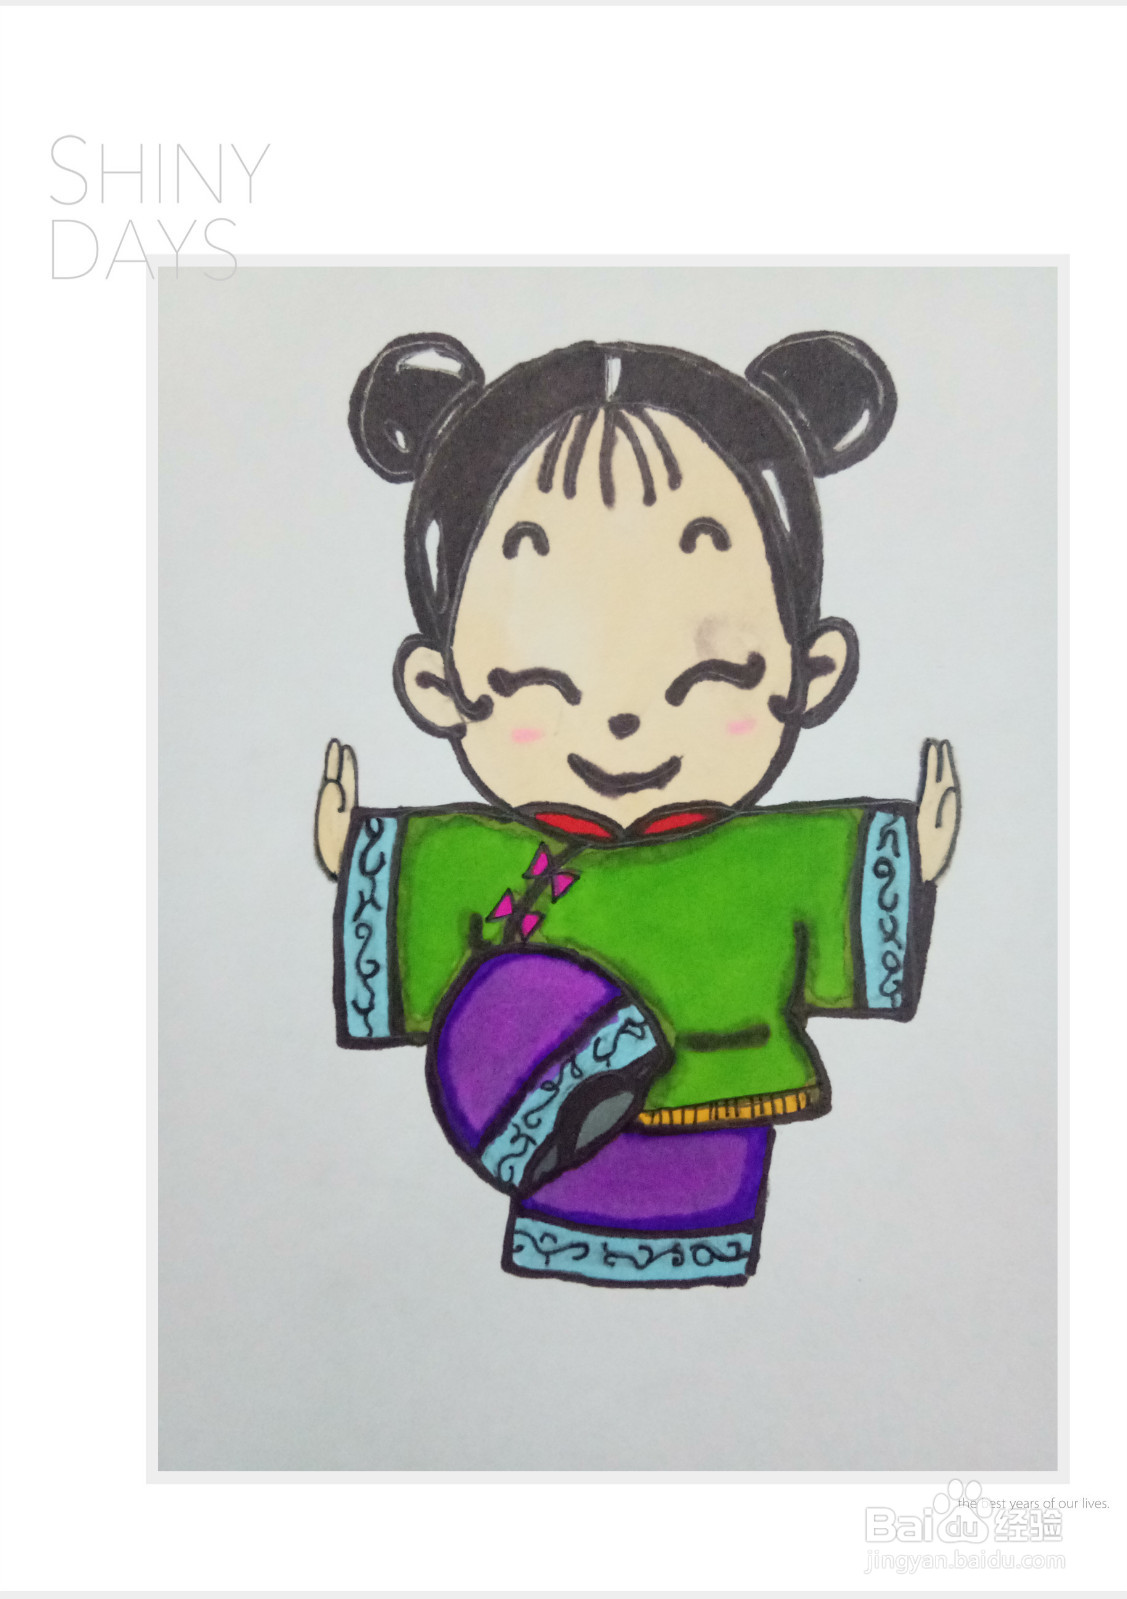 中国娃娃多可爱,拿起手中的画笔,一起画起来吧!